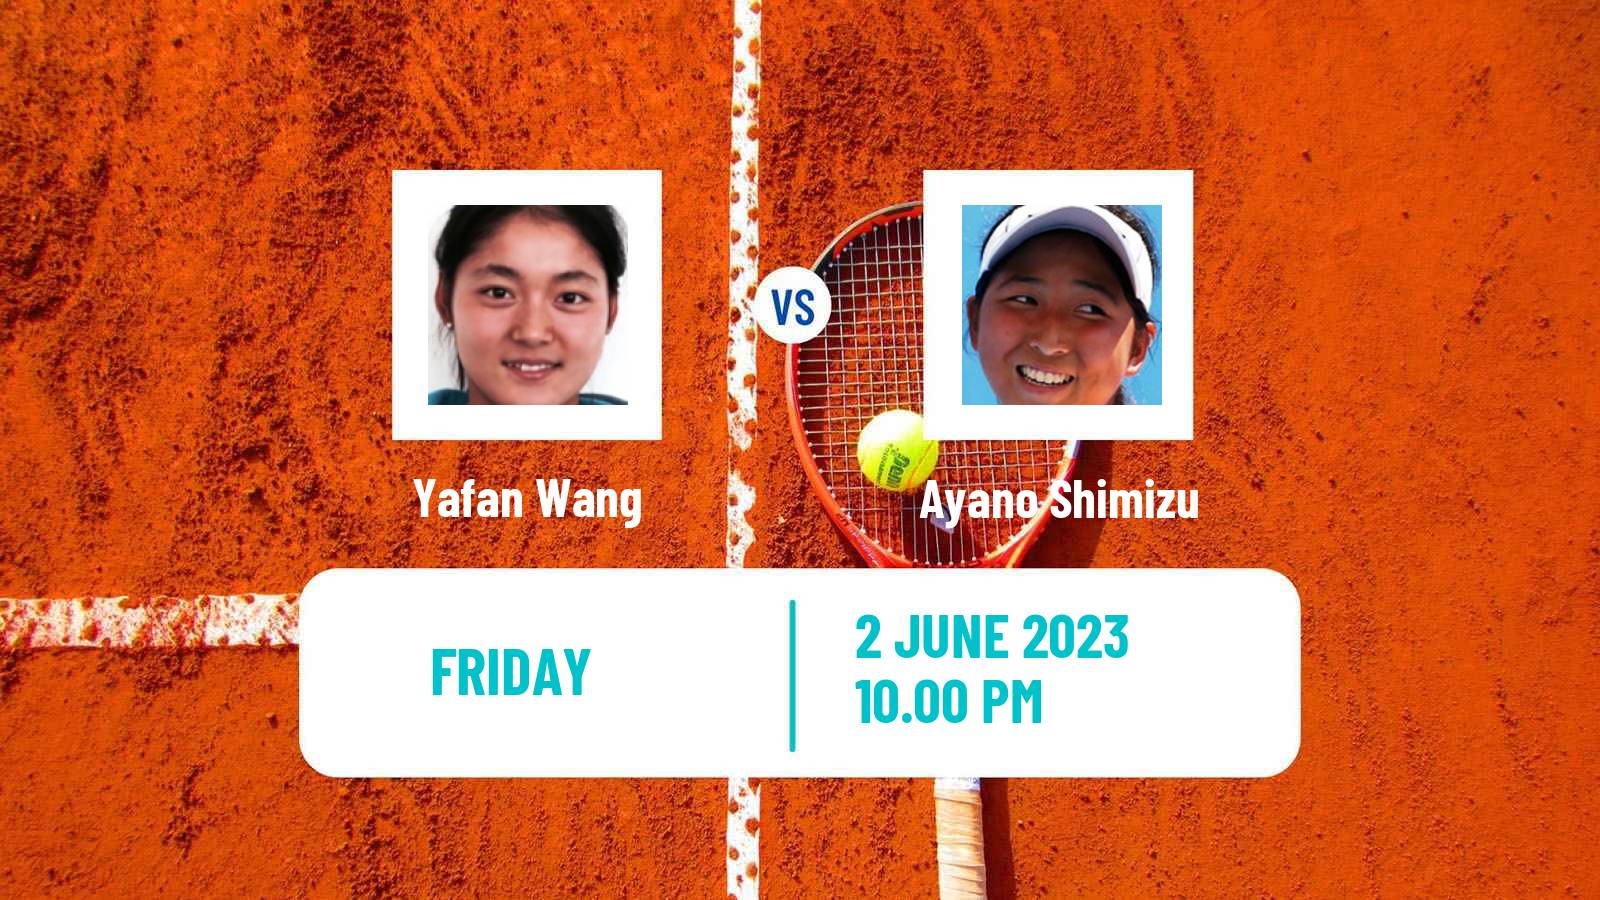 Tennis ITF W25 Tokyo Women Yafan Wang - Ayano Shimizu